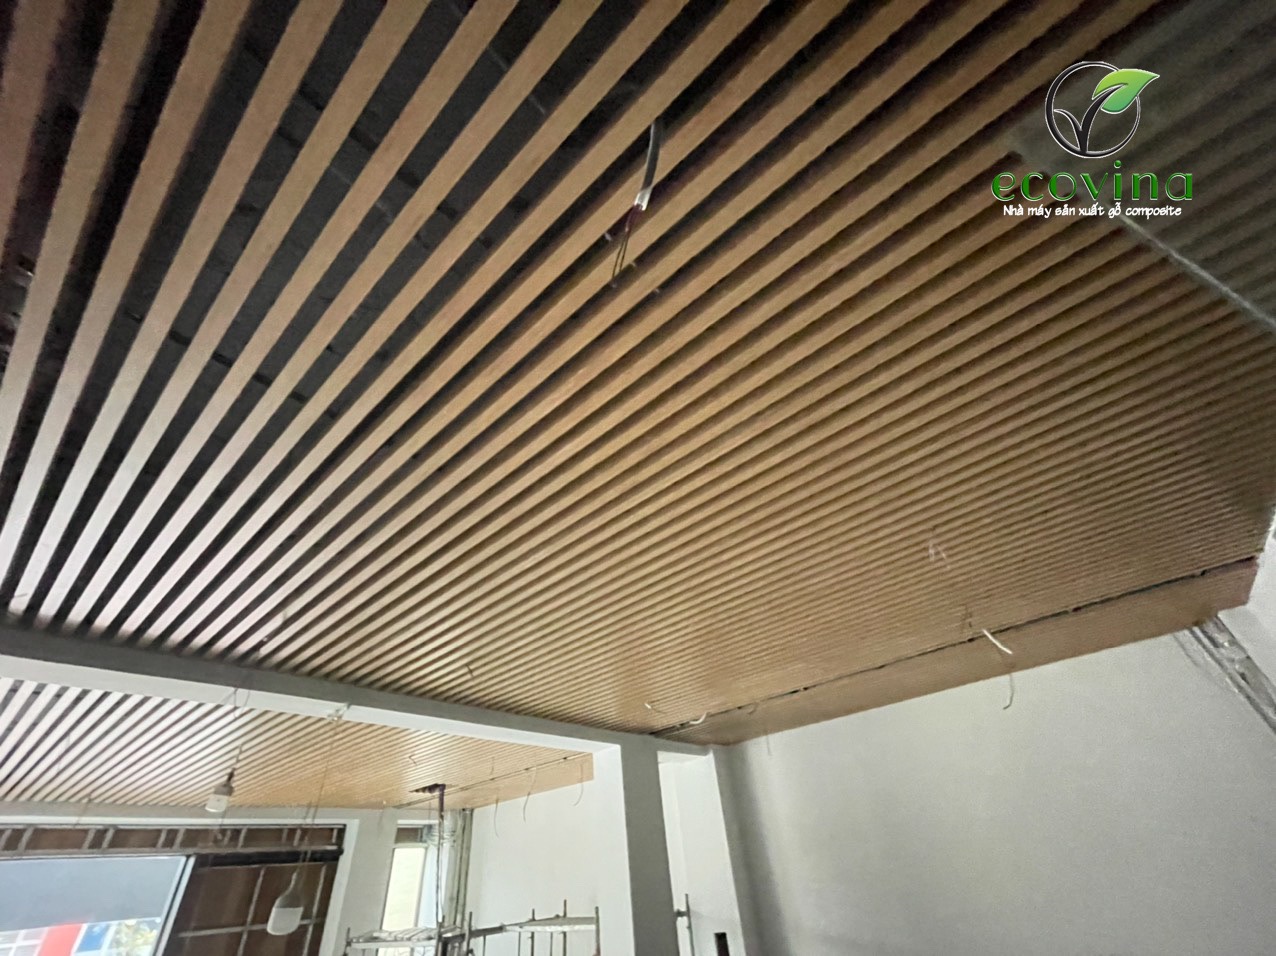 Trần nan gỗ nhựa composite Ecovina tại công trình 74 Bà Triệu, Hoàn Kiếm, Hà Nội